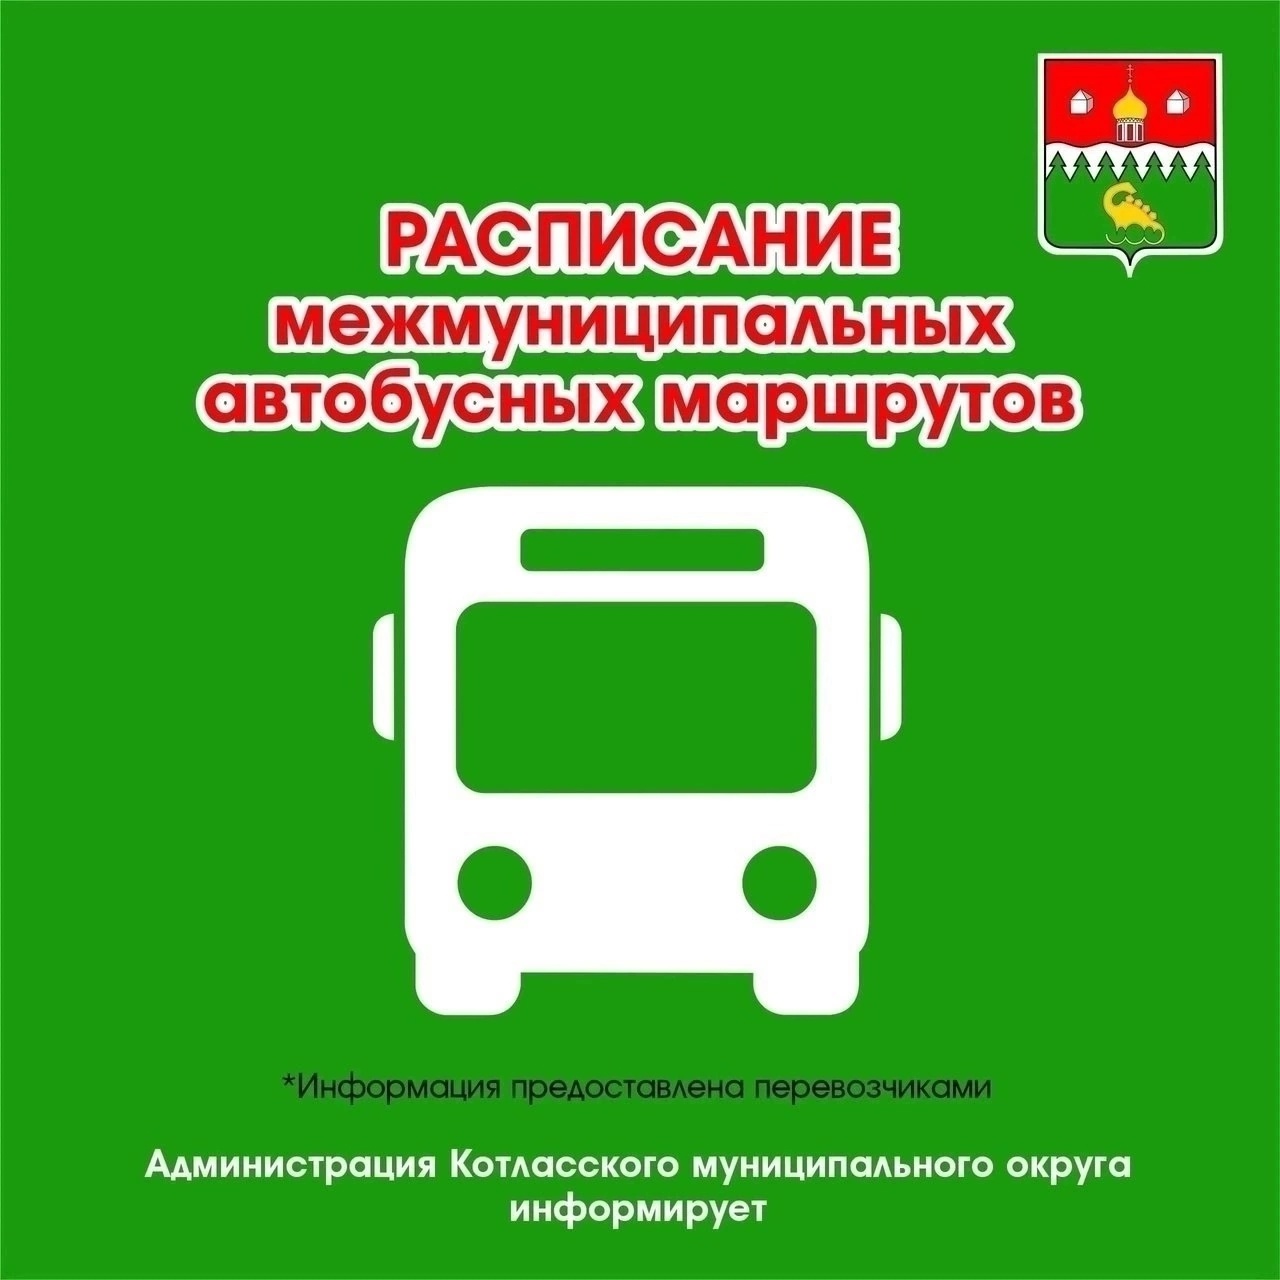 С 15 мая возобновился автобусный маршрут №321 &quot;г. Котлас - пос. Приводино&quot;.